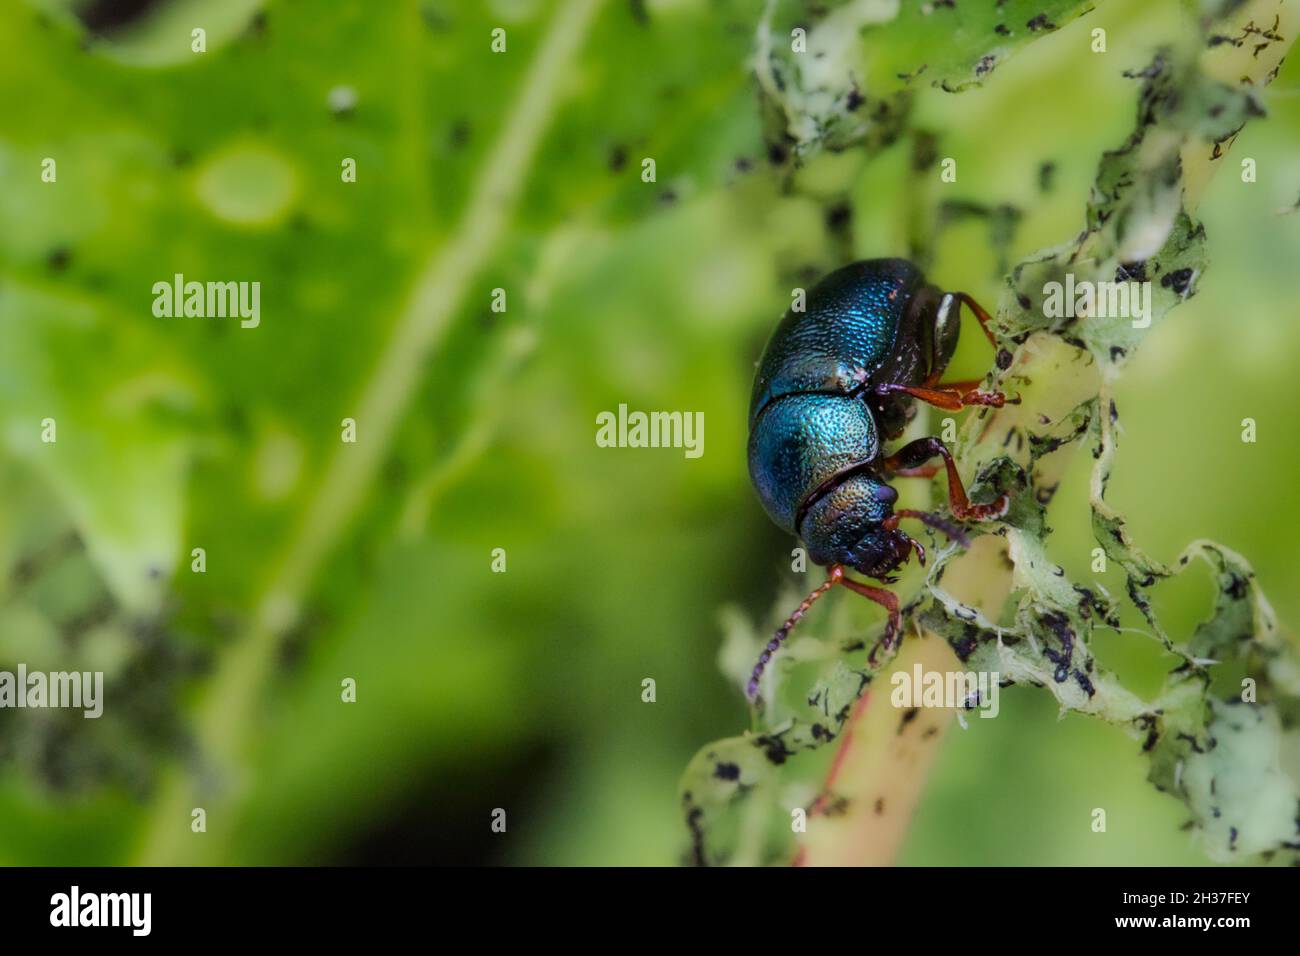 Makro-Nahaufnahme von Alder Flea Beetle (Agelastica alni) beim Essen und Zerstören einer Pflanze Stockfoto